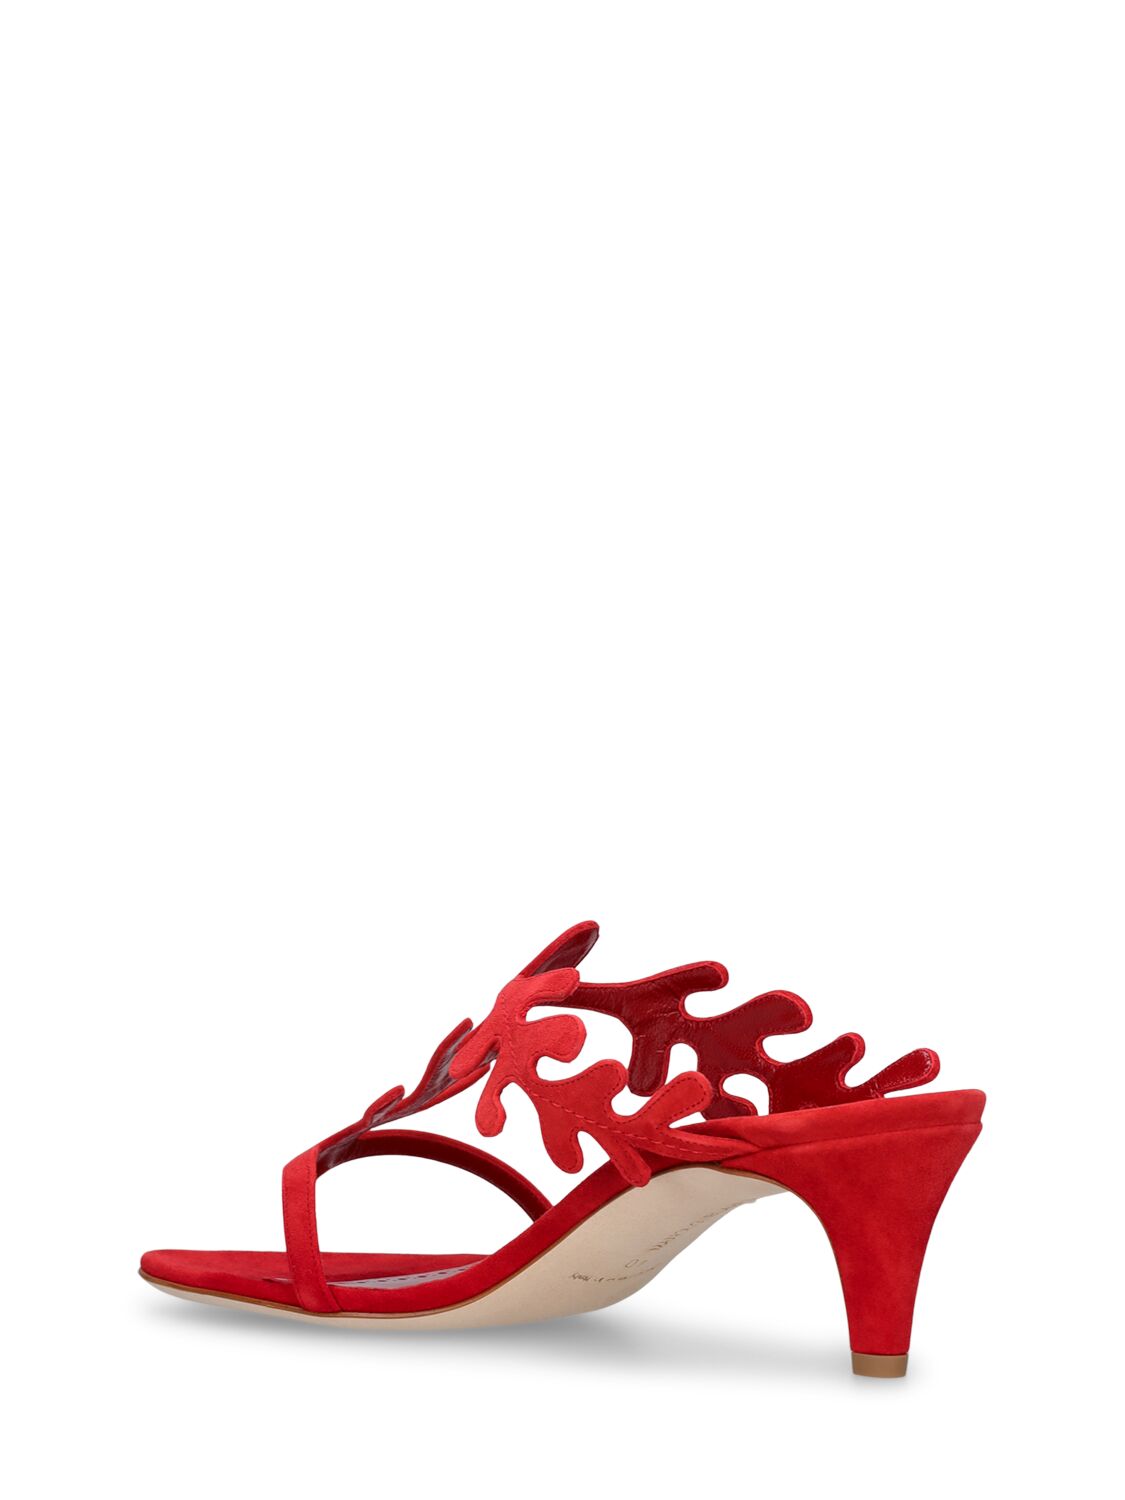 Shop Manolo Blahnik 50mm Hidrag Suede Mule Sandals In Bright Red